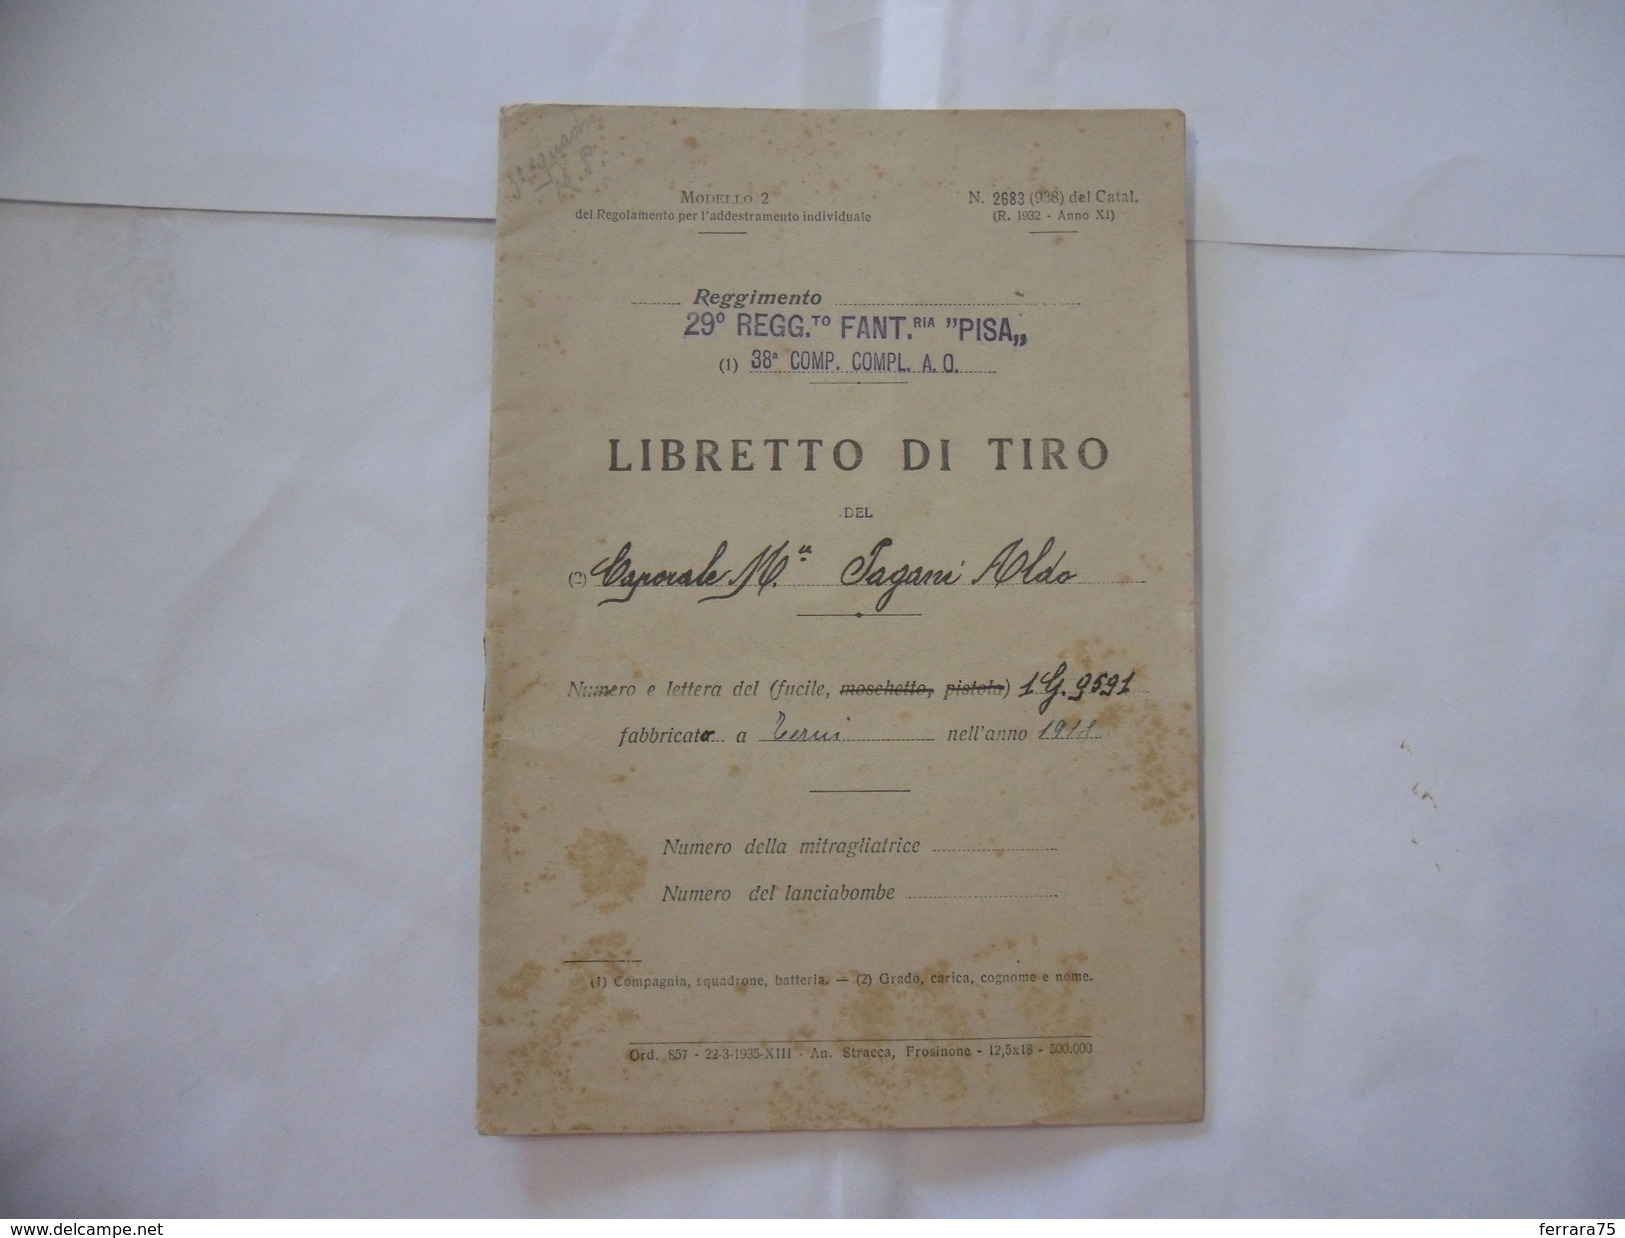 WW2 LIBRETTO DI TIRO 29°REGGIMENTO FANTERIA PISA FRONTE DEL PIAVE A.O. 1936. - Italiano